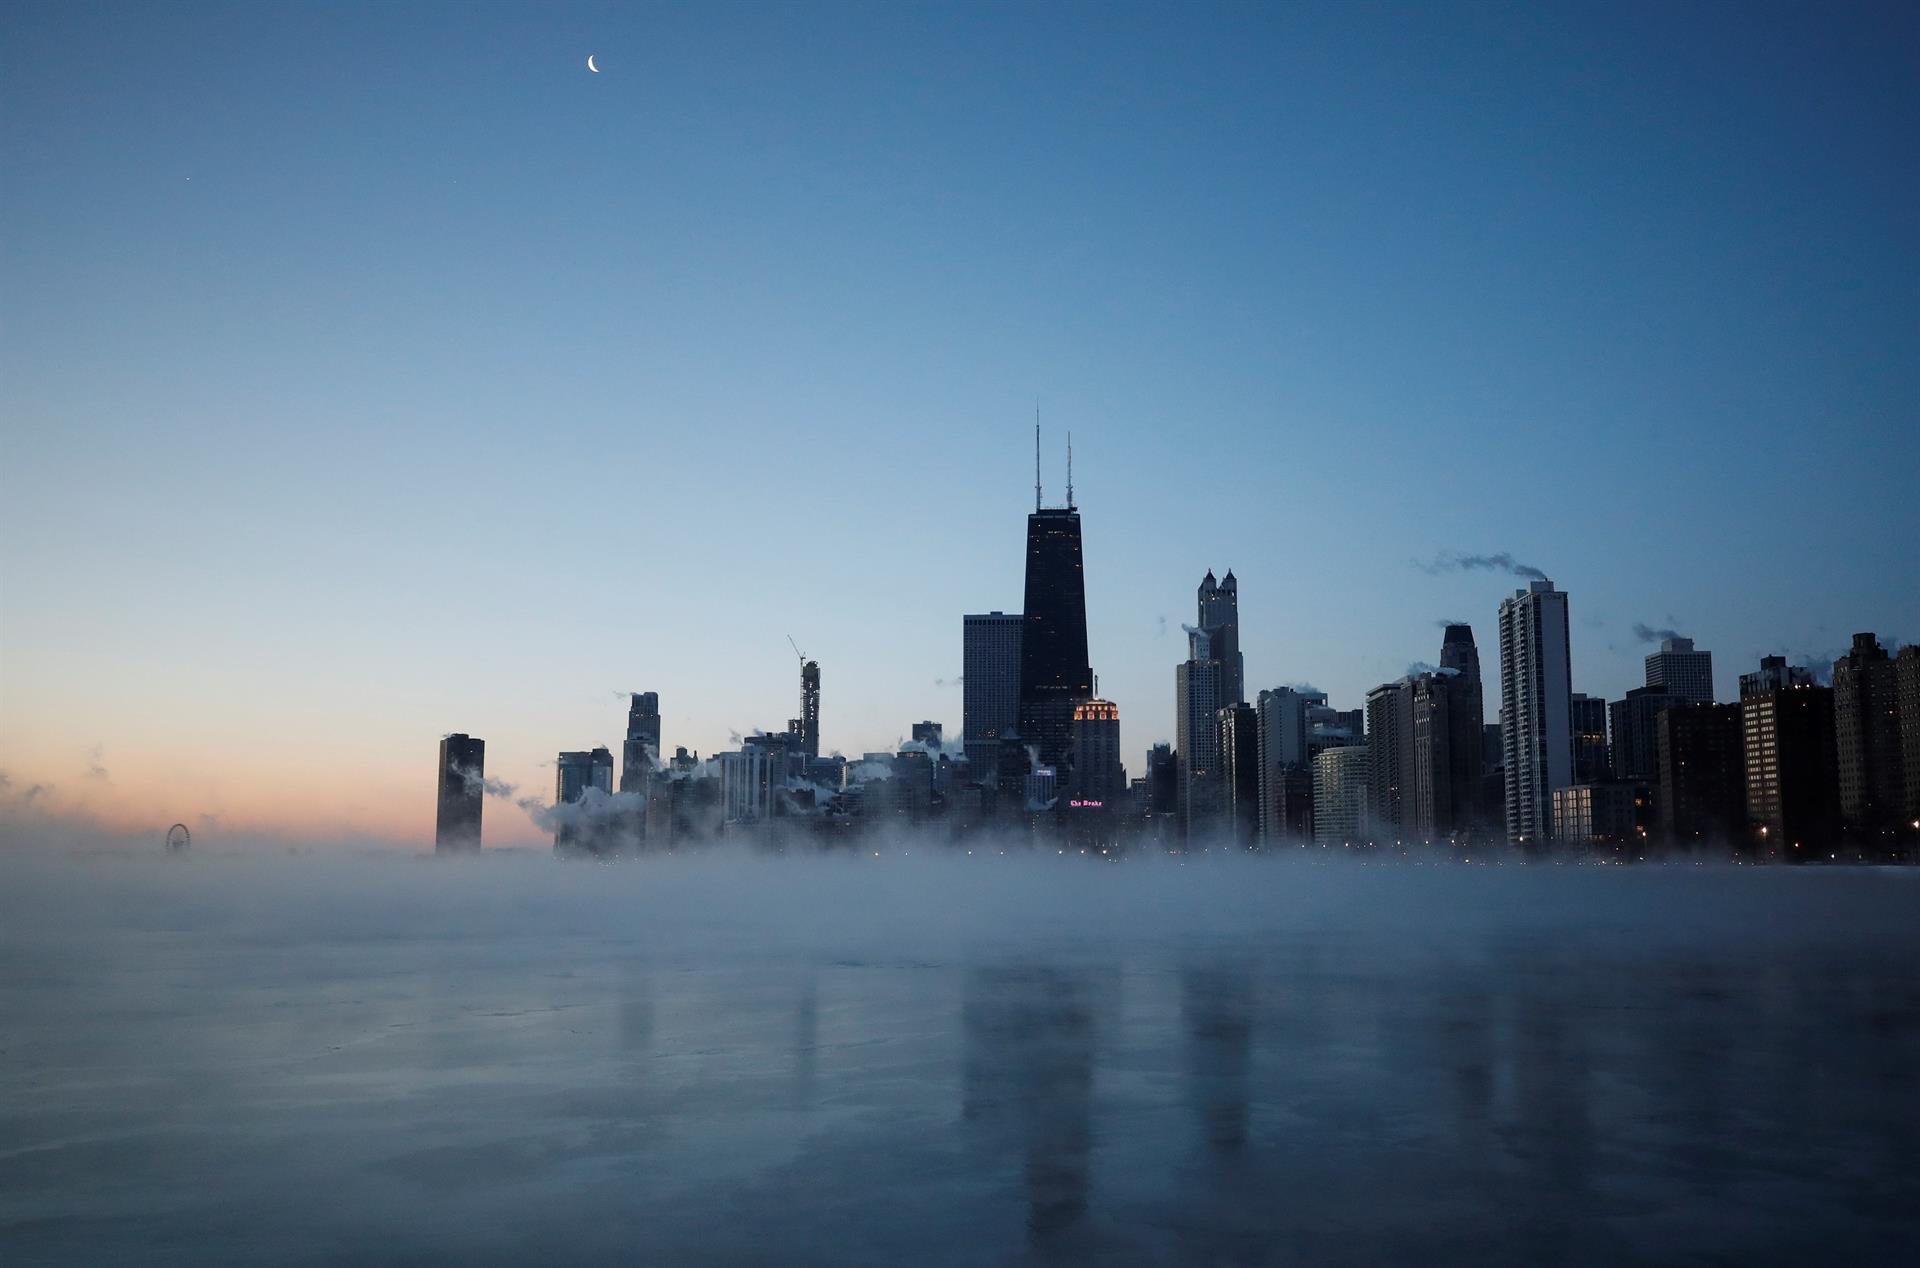 Amanecer en el lago Michigan en Chicago, Illinois, Estados Unidos. Imagen de archivo. EFE/ Kamil Krzaczynski
